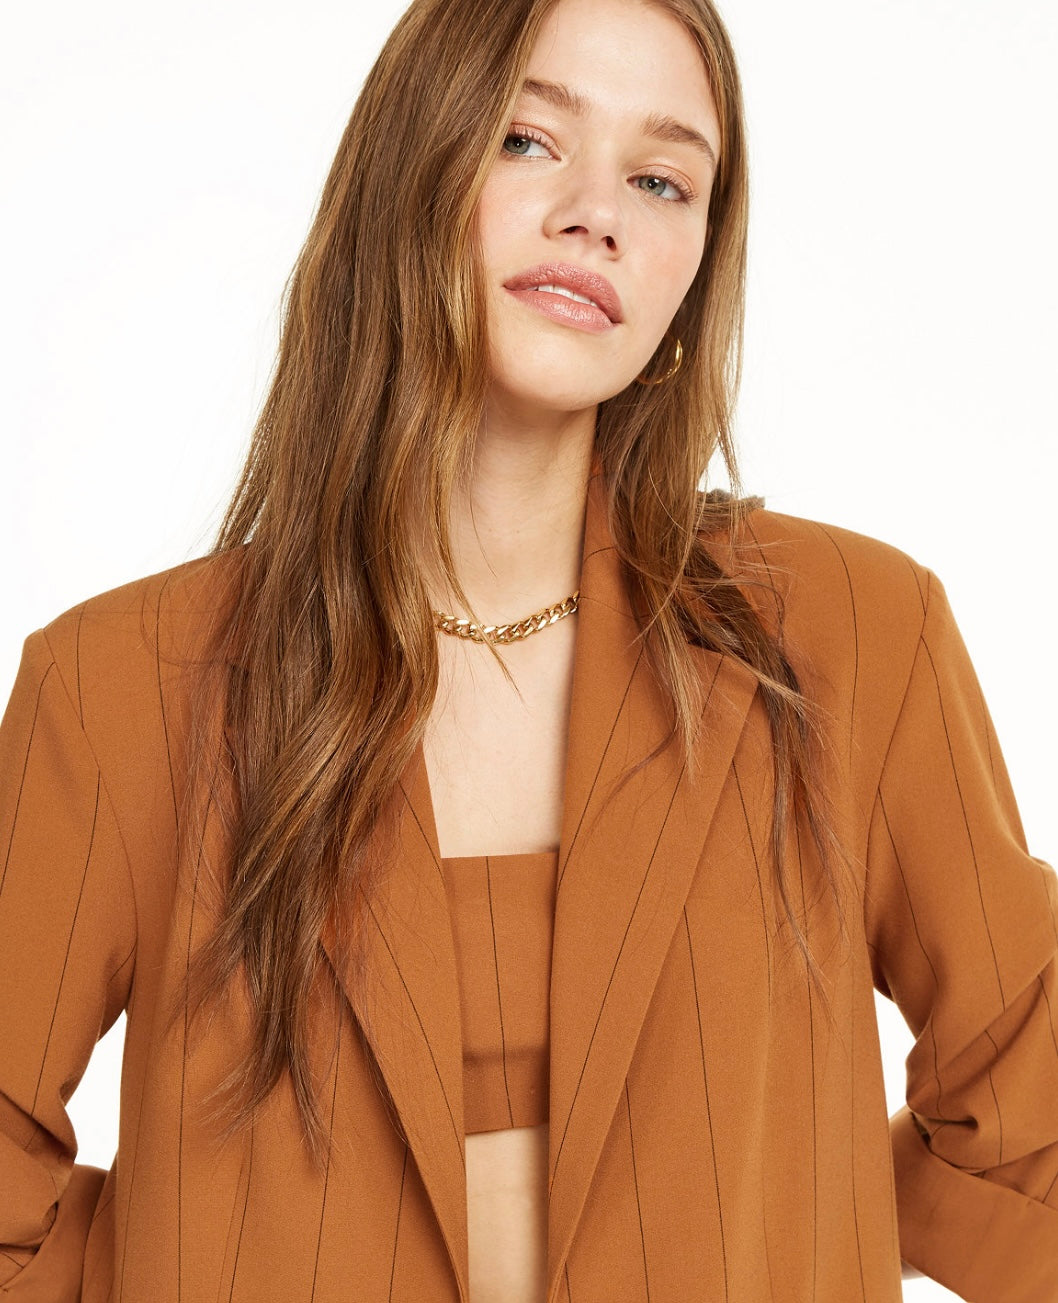 Danielle Bernstein Women's Pinstripe 3/4 Ruched Sleeves Two-Button Blazer